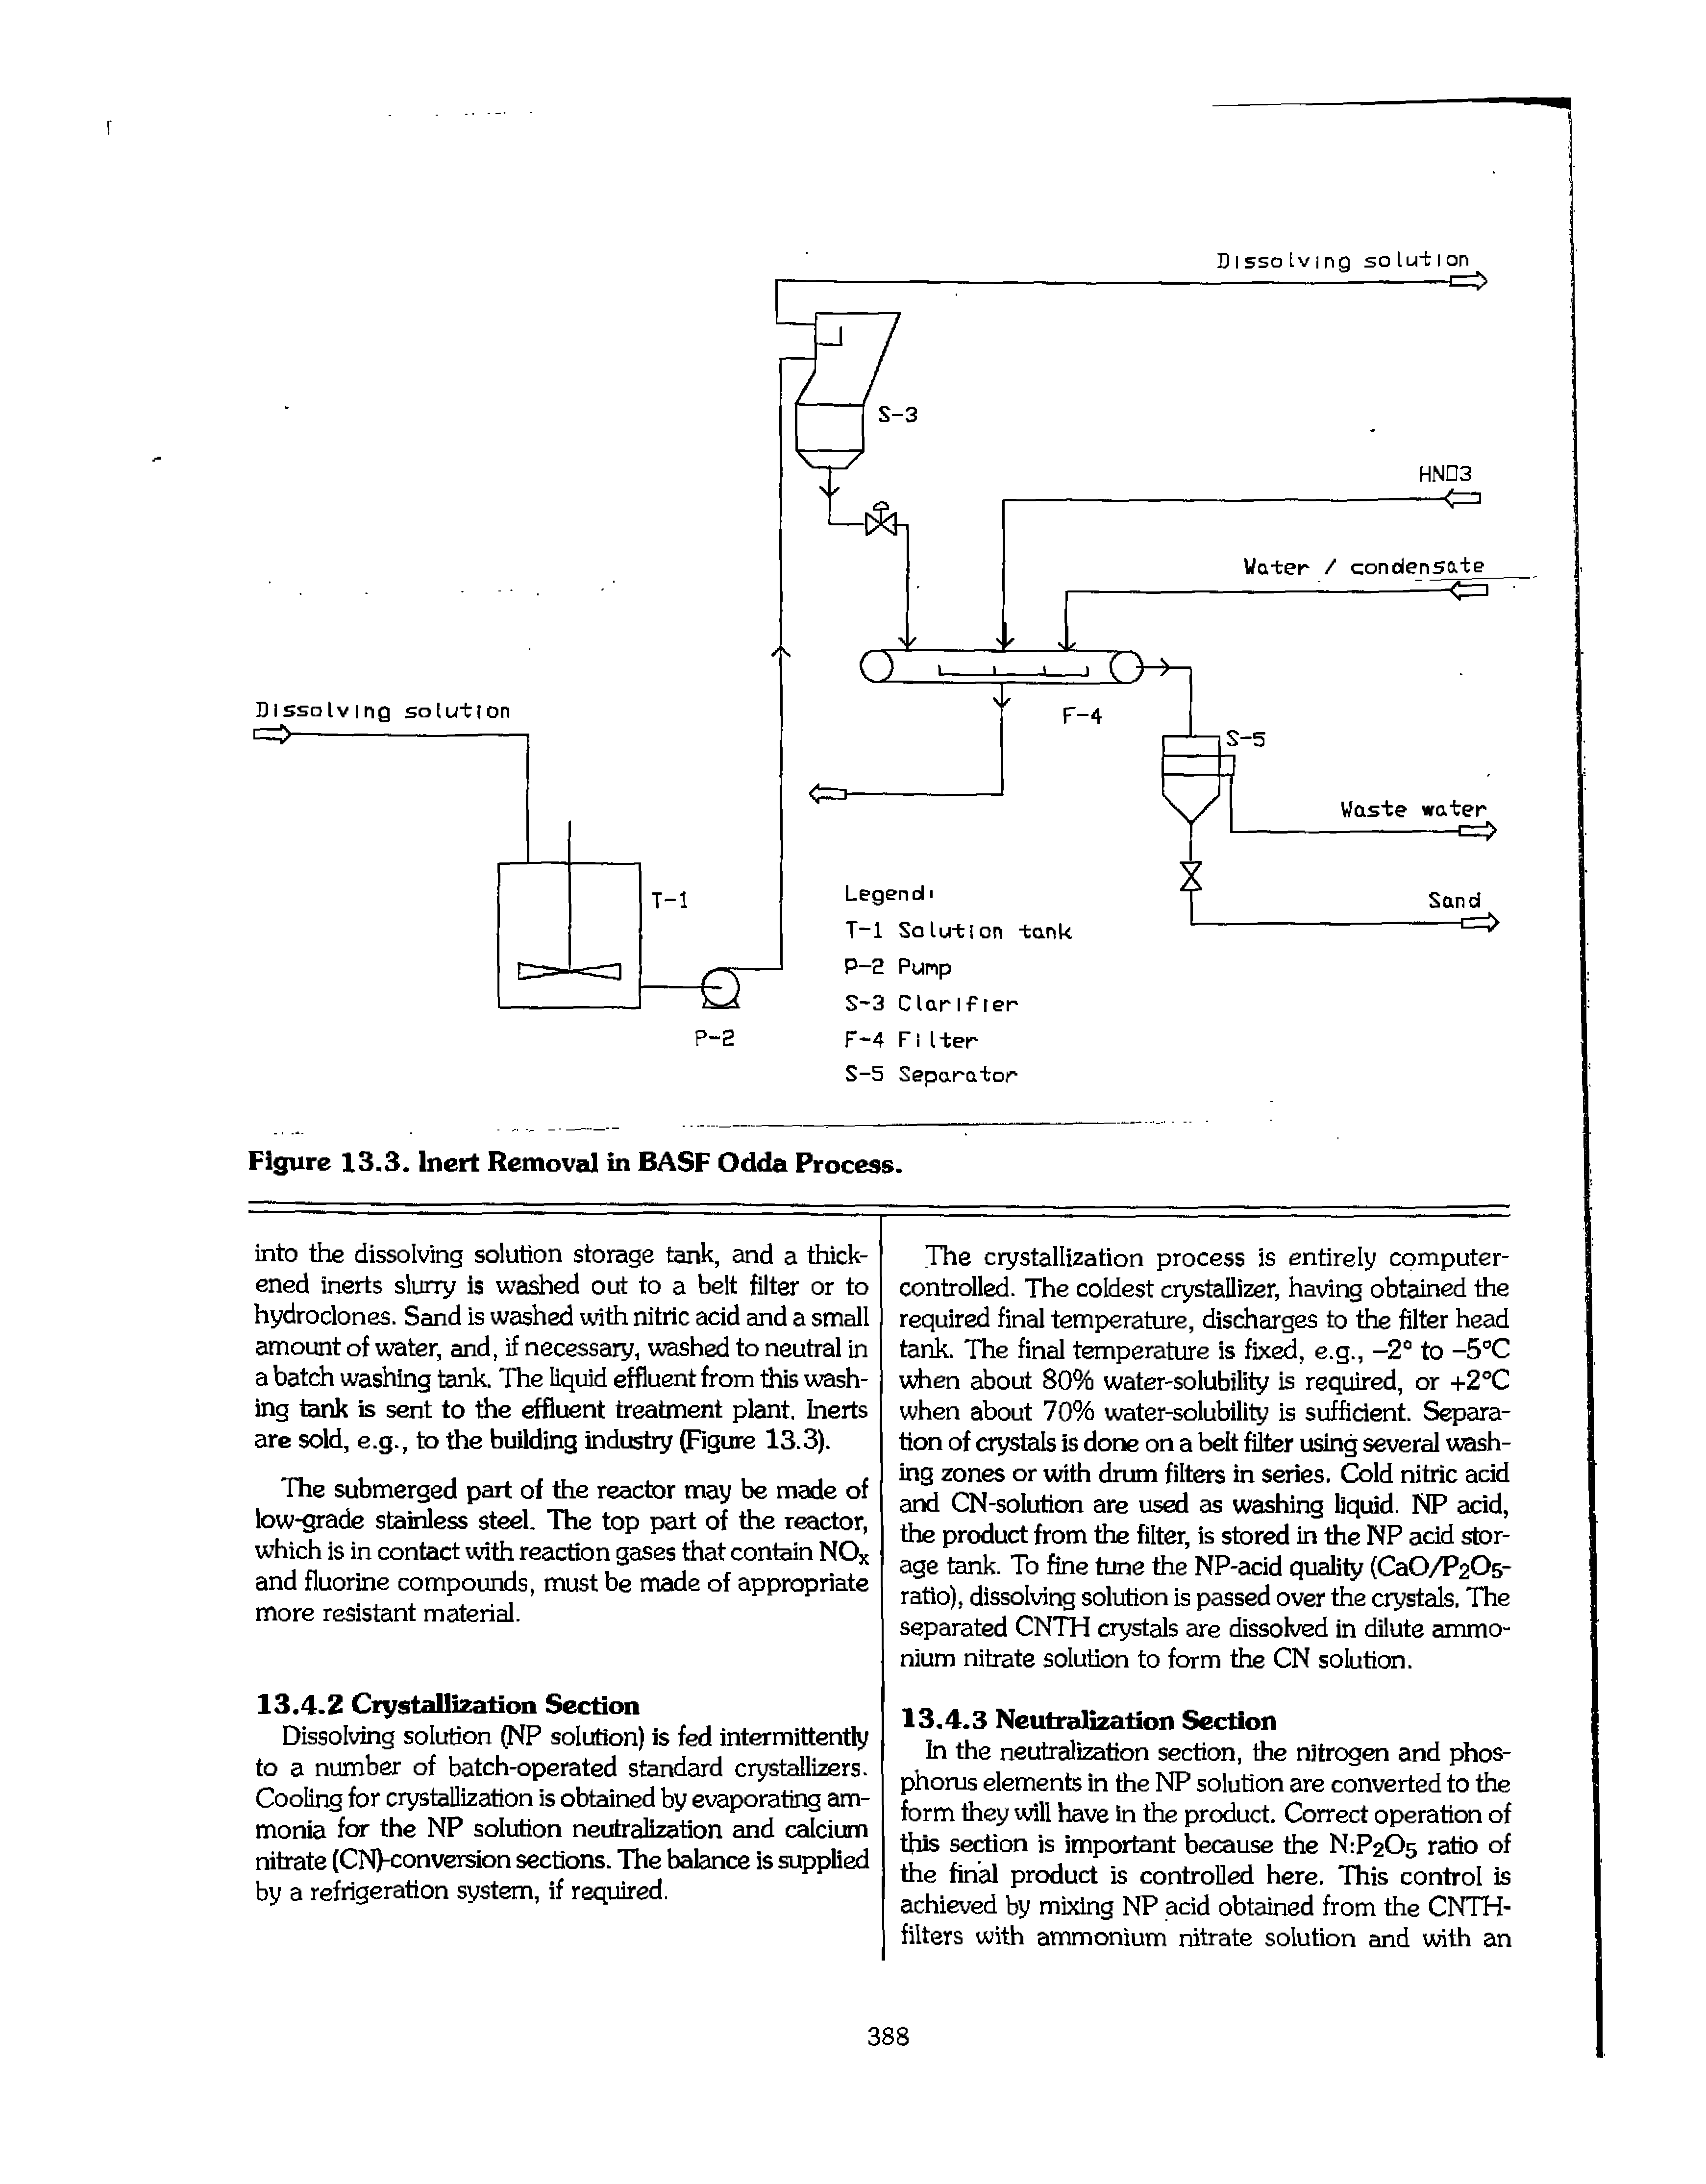 Figure 13.3. Inert Removal in BASF Odda Process.